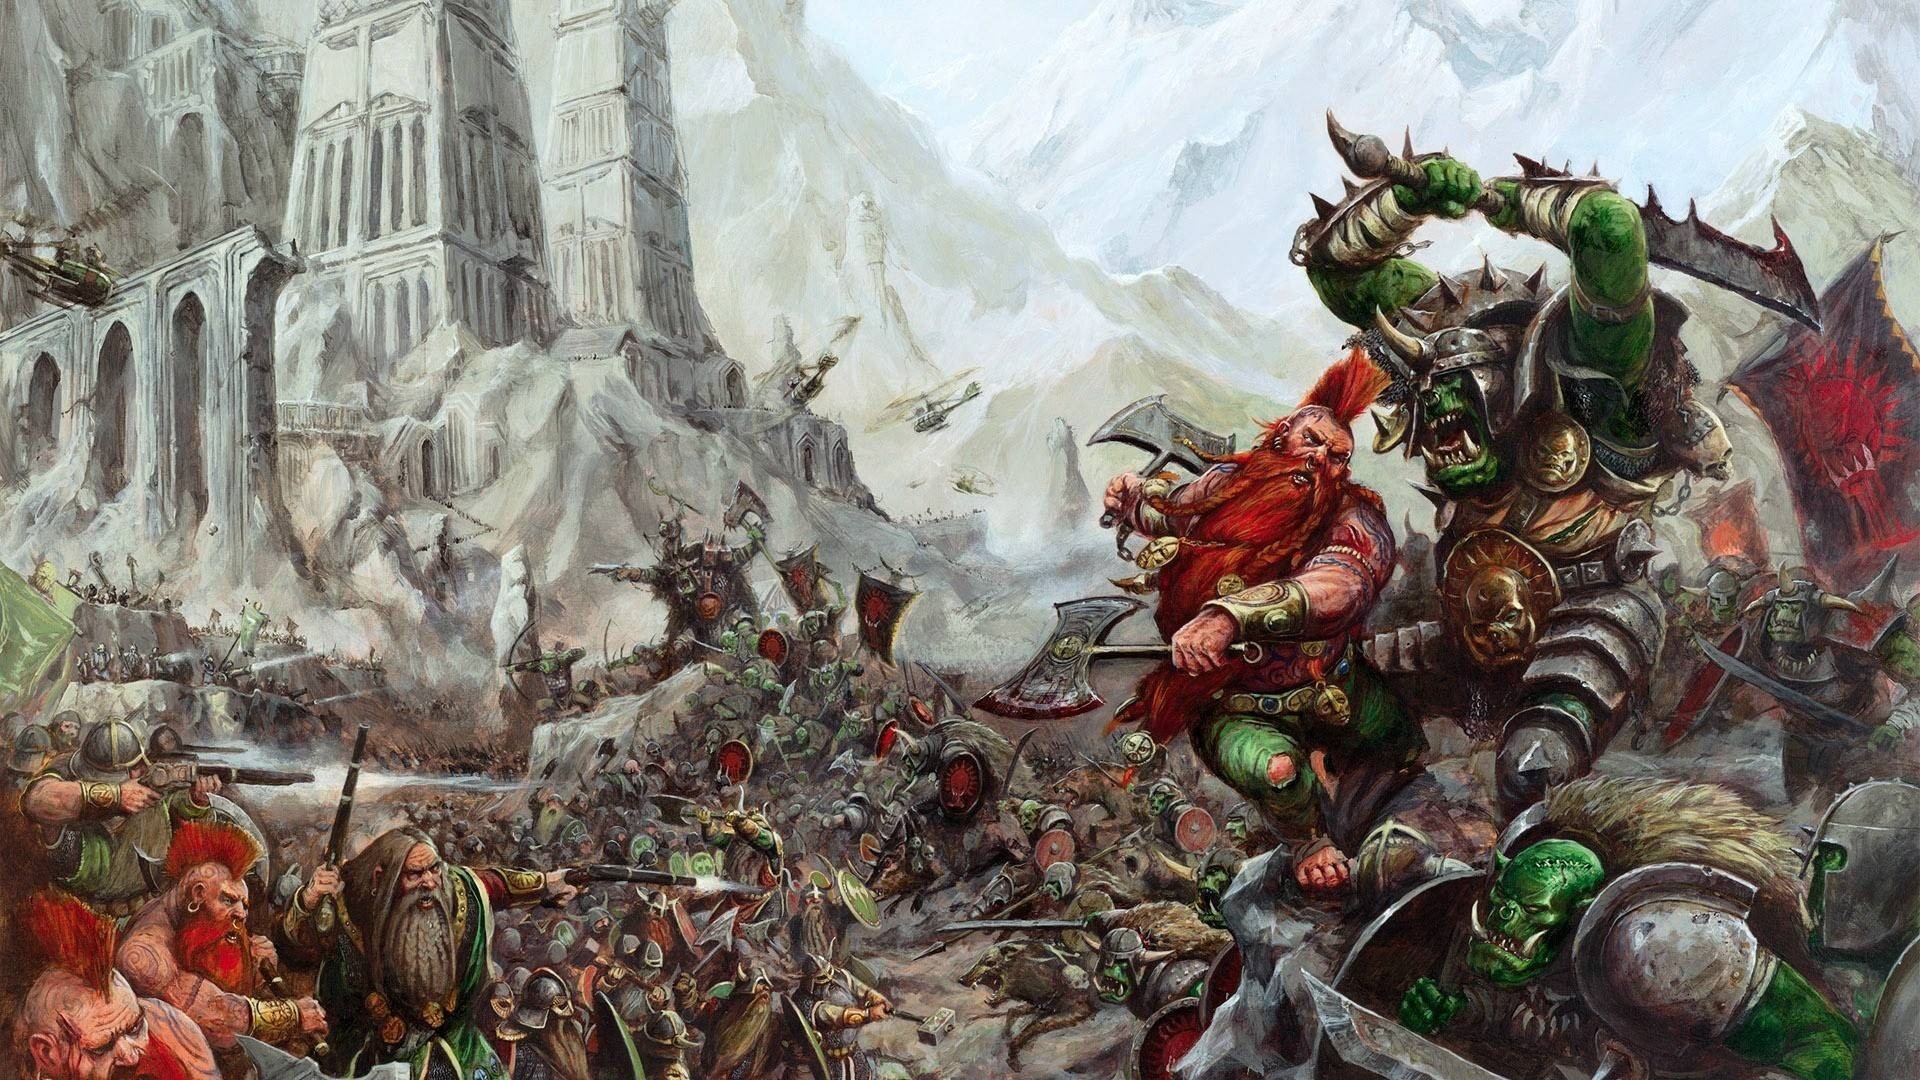 General 1920x1080 Warhammer Fantasy Warhammer dwarf Orc sword digital art